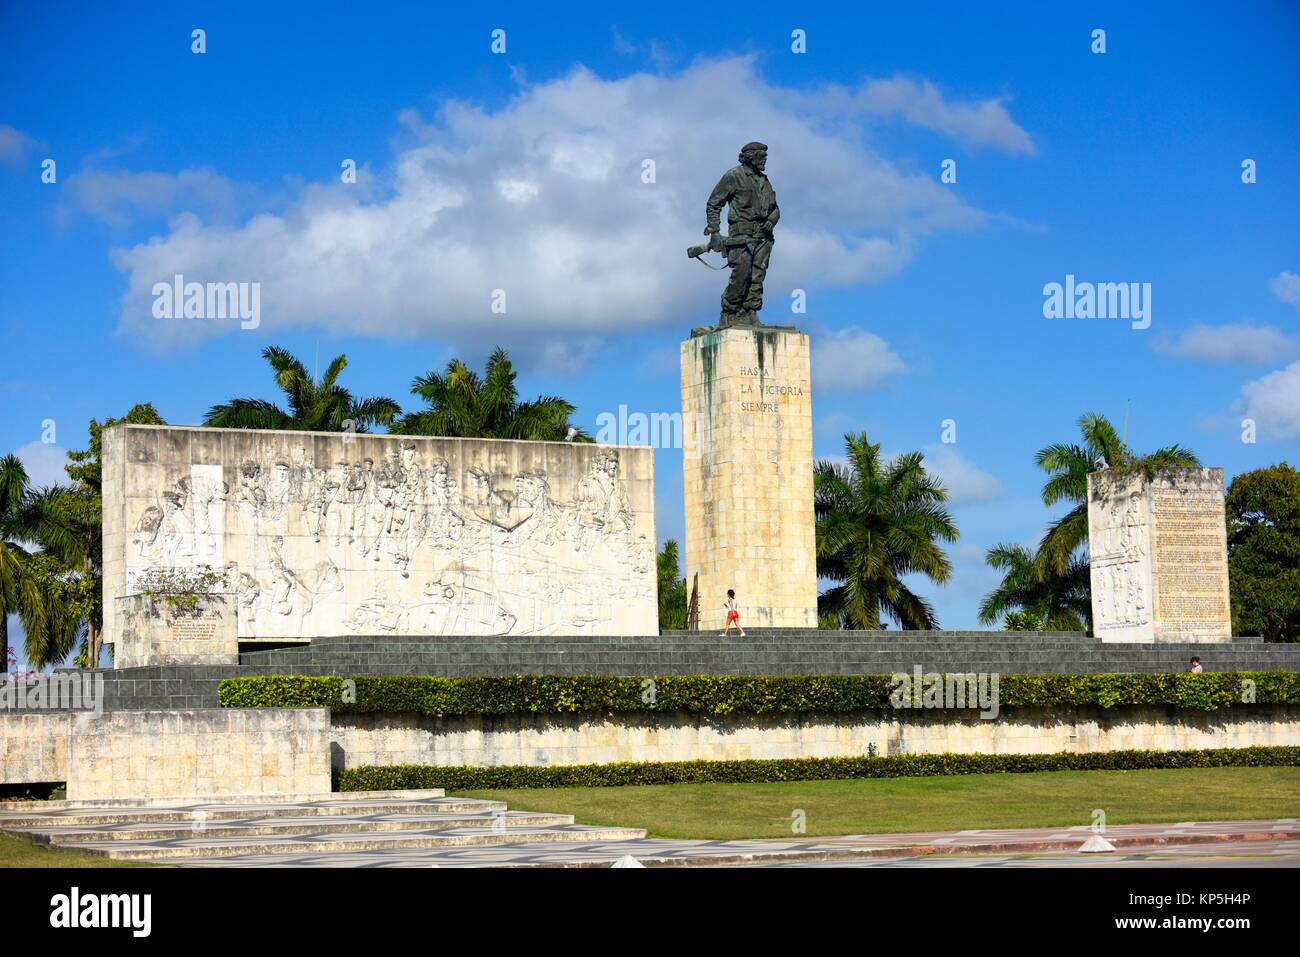 Monumento del Che Guevara y el mausoleo en Santa Clara, Cuba. Foto de stock